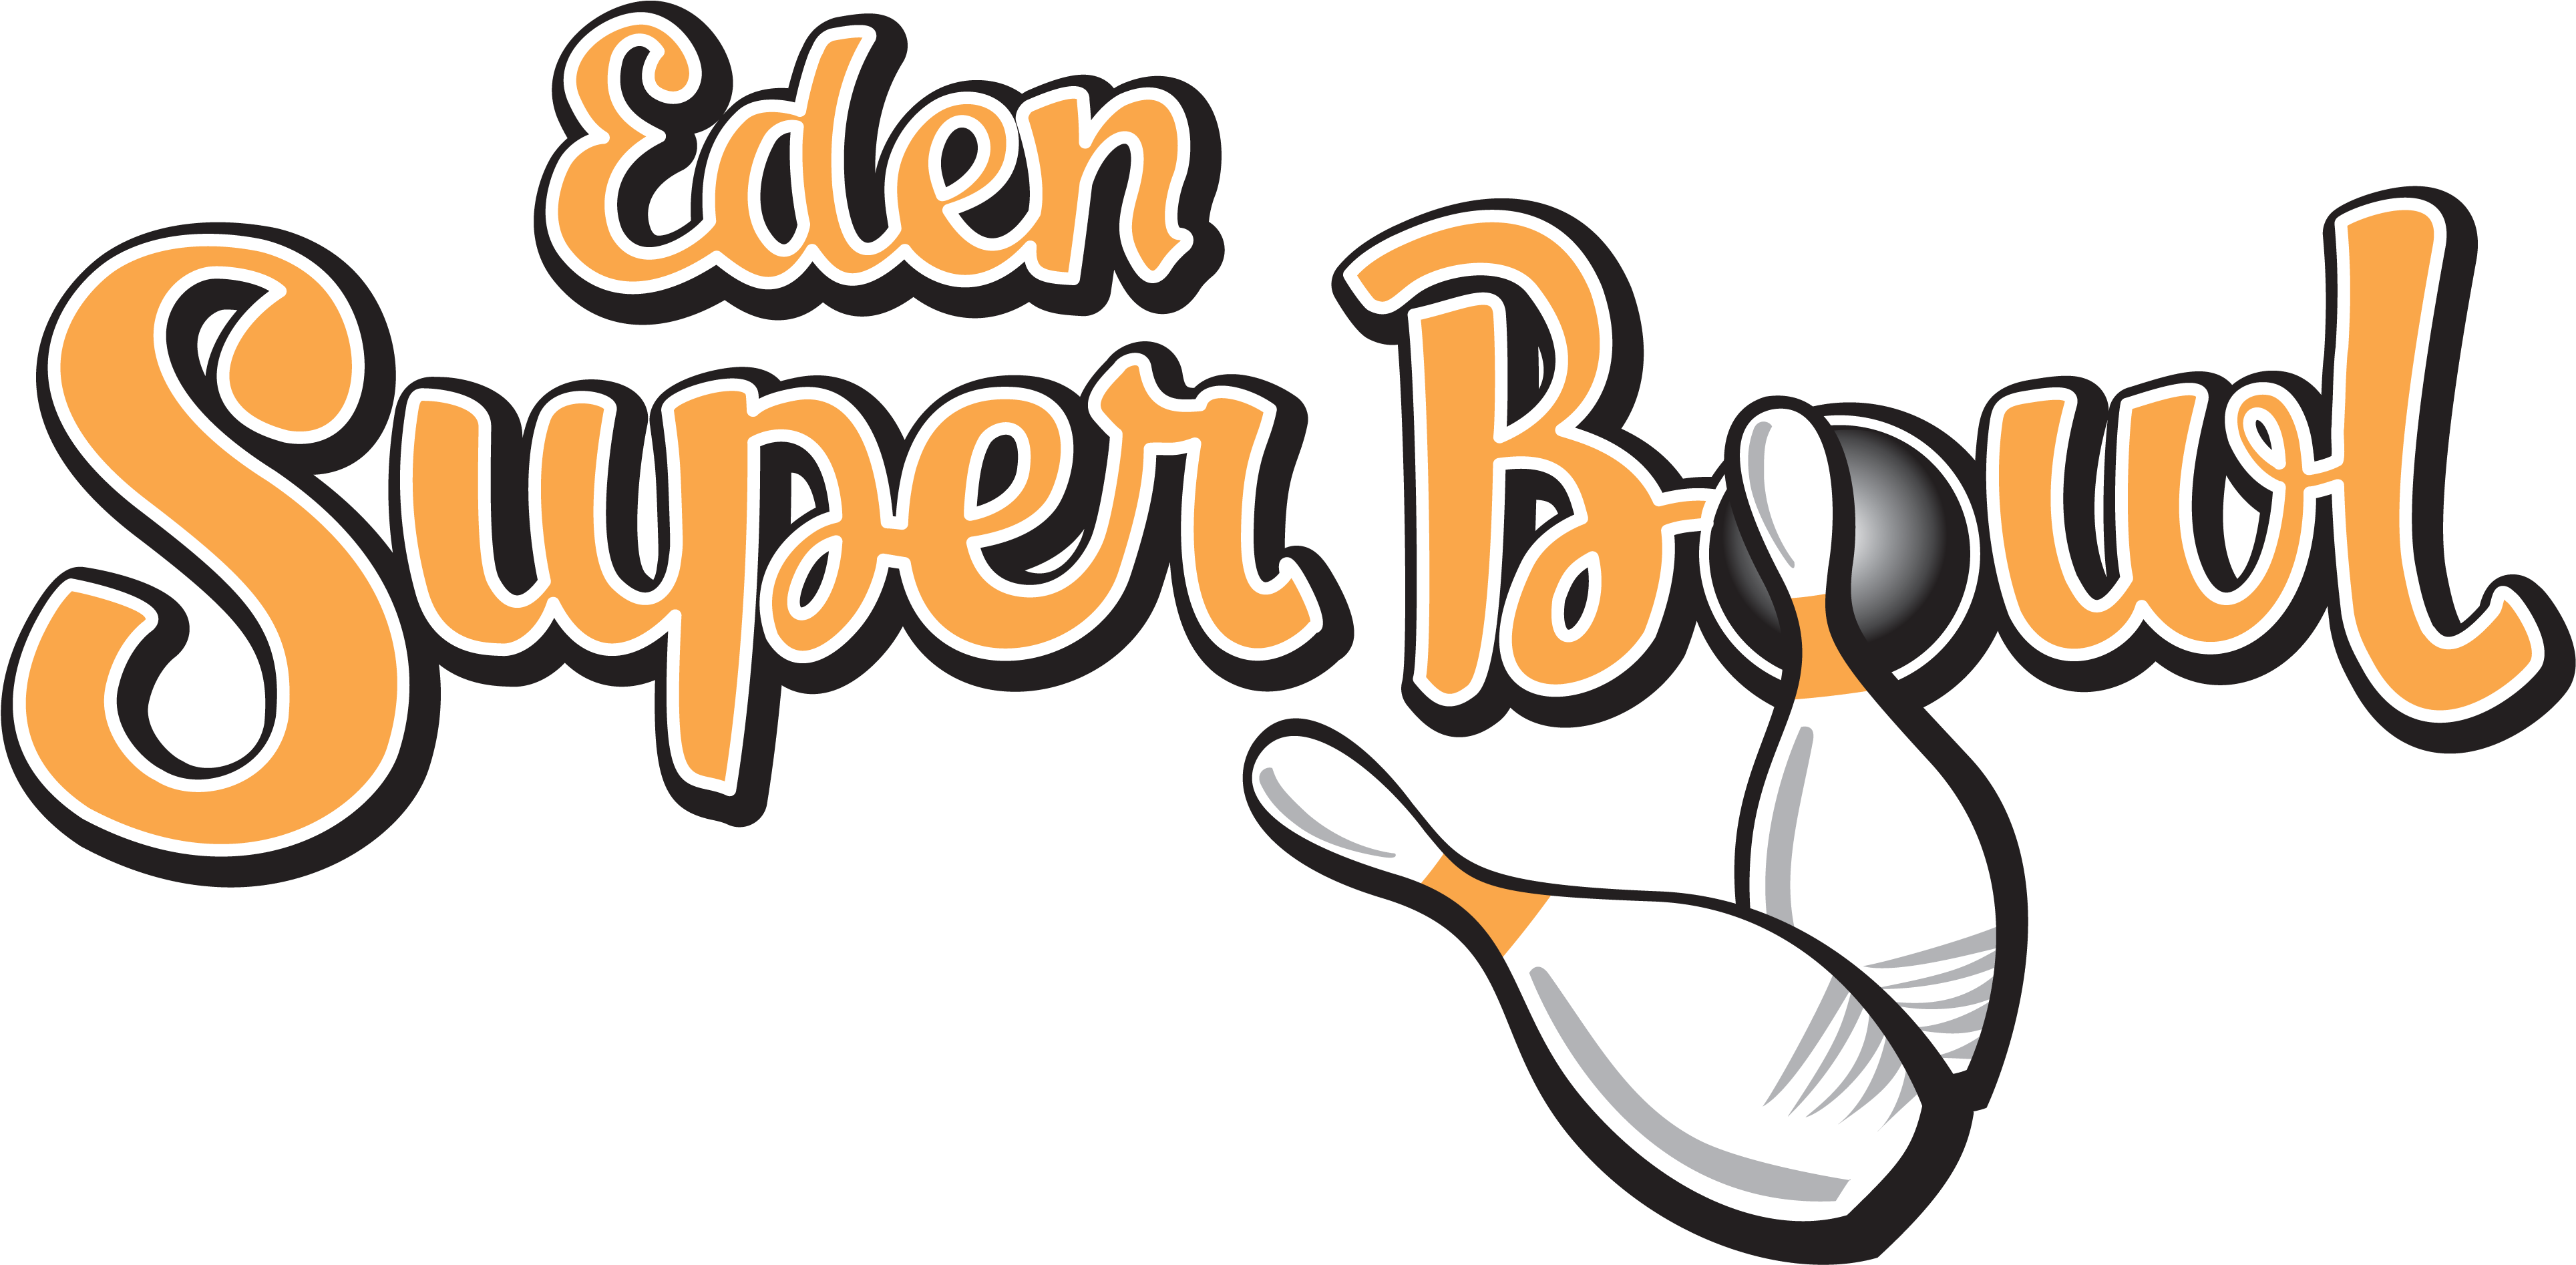 Careers - Eden Super Bowl (3908x1919)